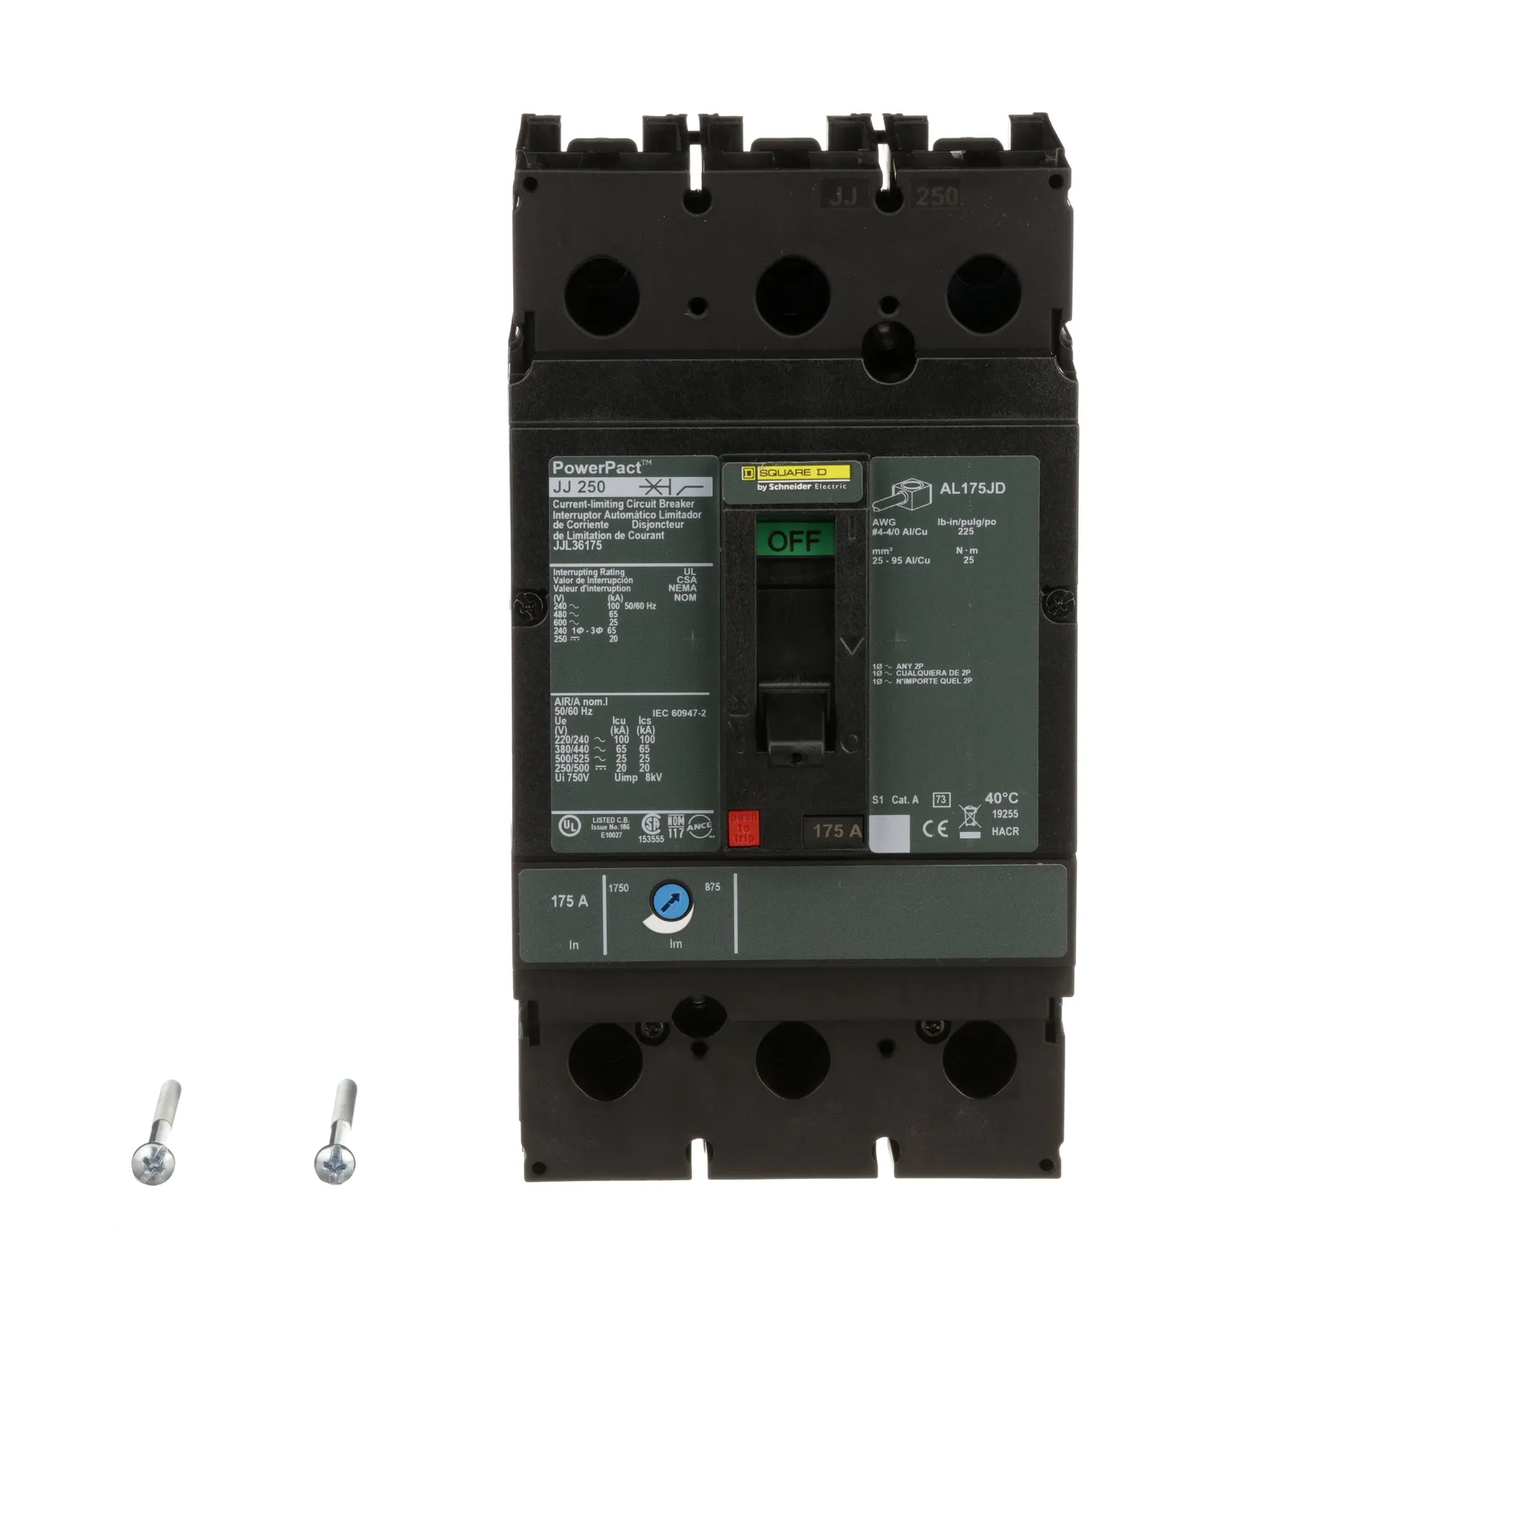 JJL36175 - Square D - Molded Case Circuit Breaker